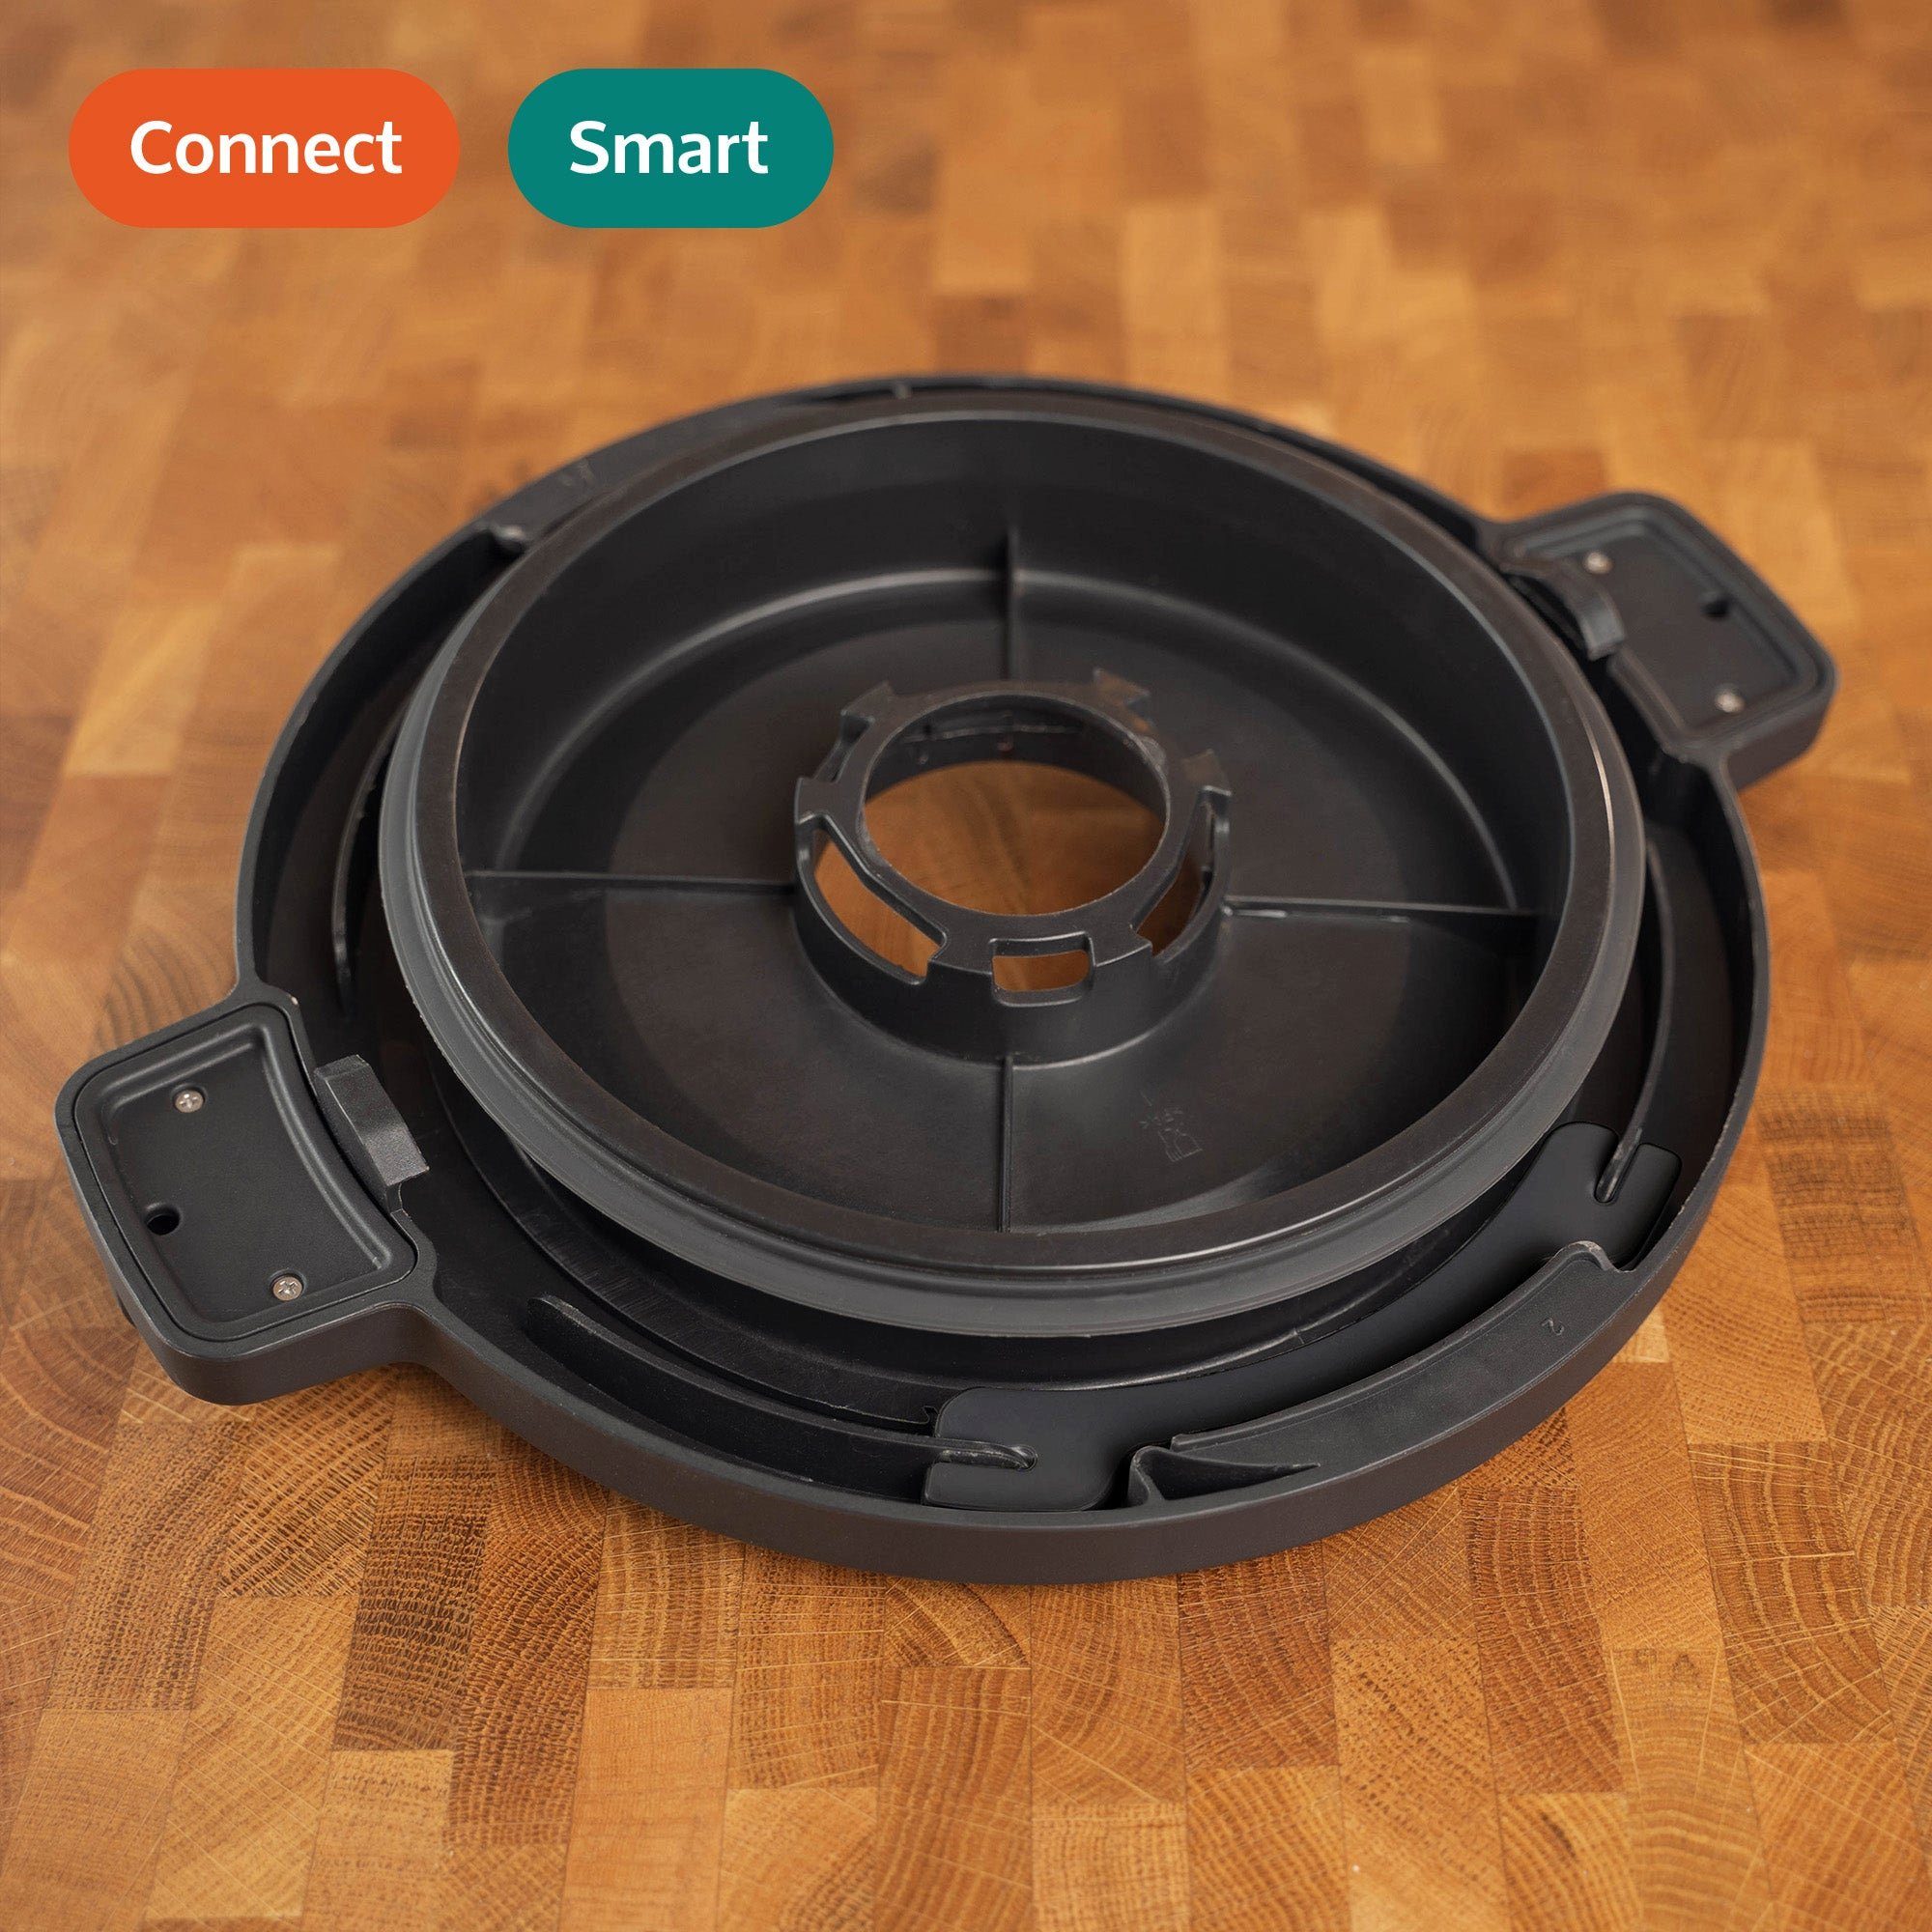 Mixcover Küchenmaschine mit Kochfunktion Deckelhalter kompatibel Monsieur Cuisine Connect / Smart